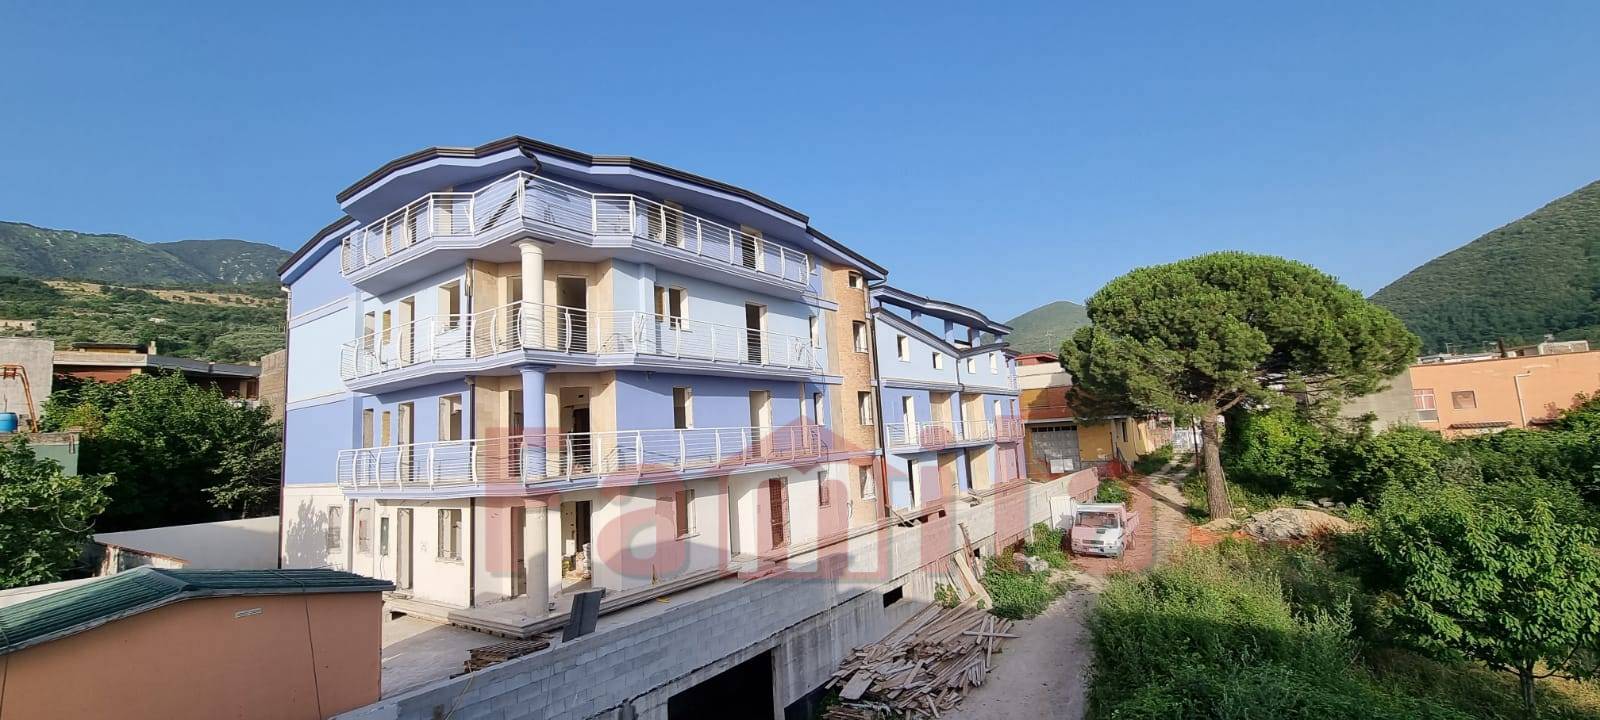 Appartamento in vendita a Mugnano del Cardinale, 3 locali, prezzo € 56.000 | PortaleAgenzieImmobiliari.it